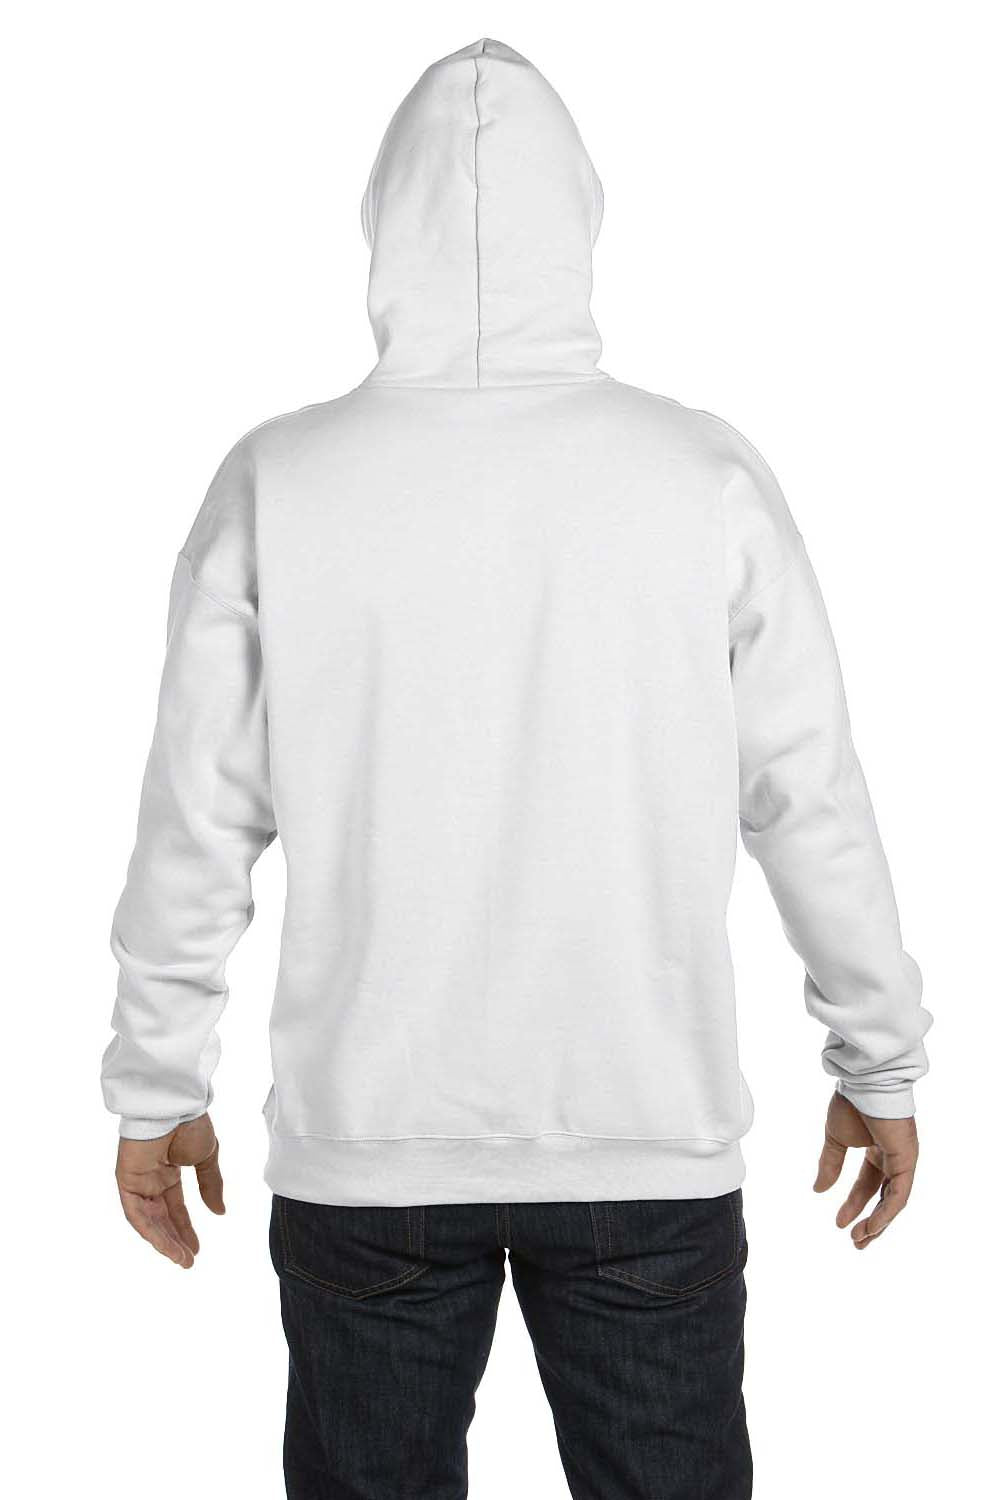 Hanes F170 Mens Ultimate Cotton PrintPro XP Hooded Sweatshirt Hoodie White Back